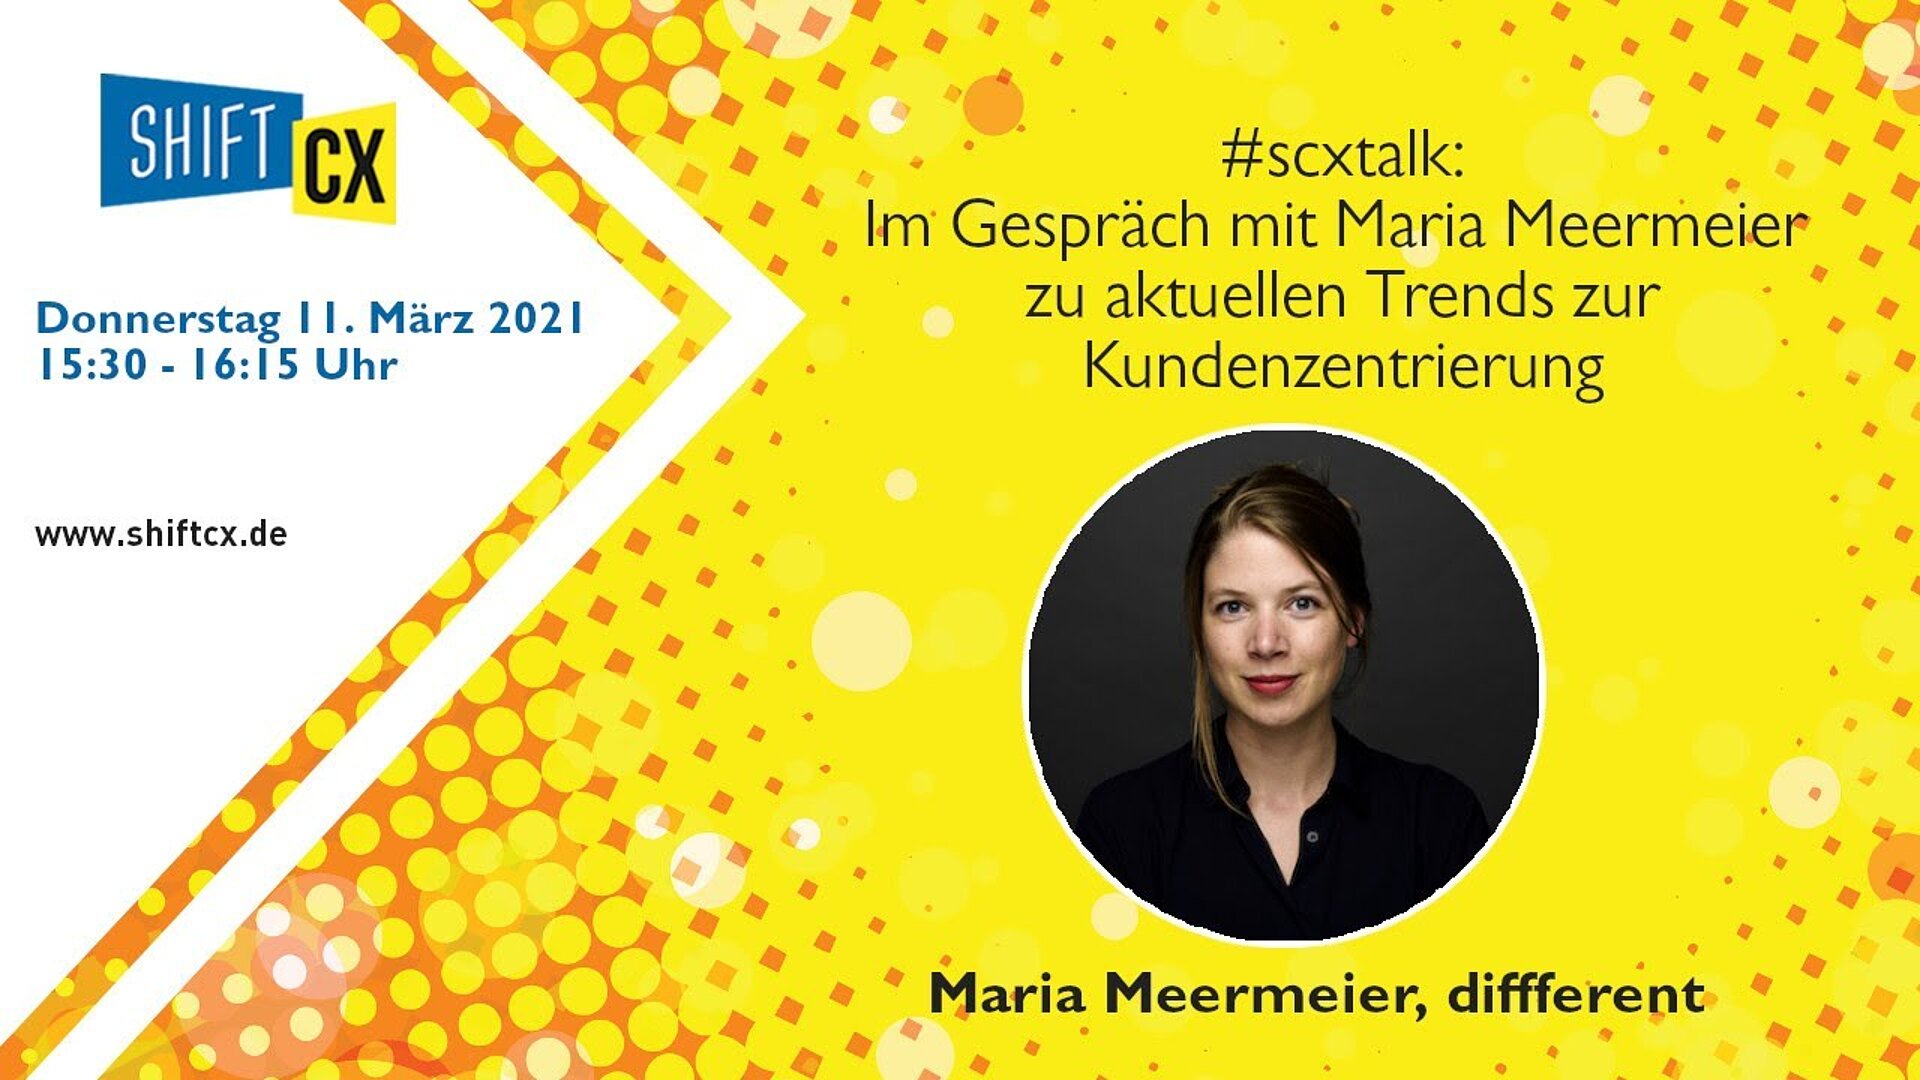 Im Gespräch mit Maria Meermeier zu aktuellen Trends zur Kundenzentrierung